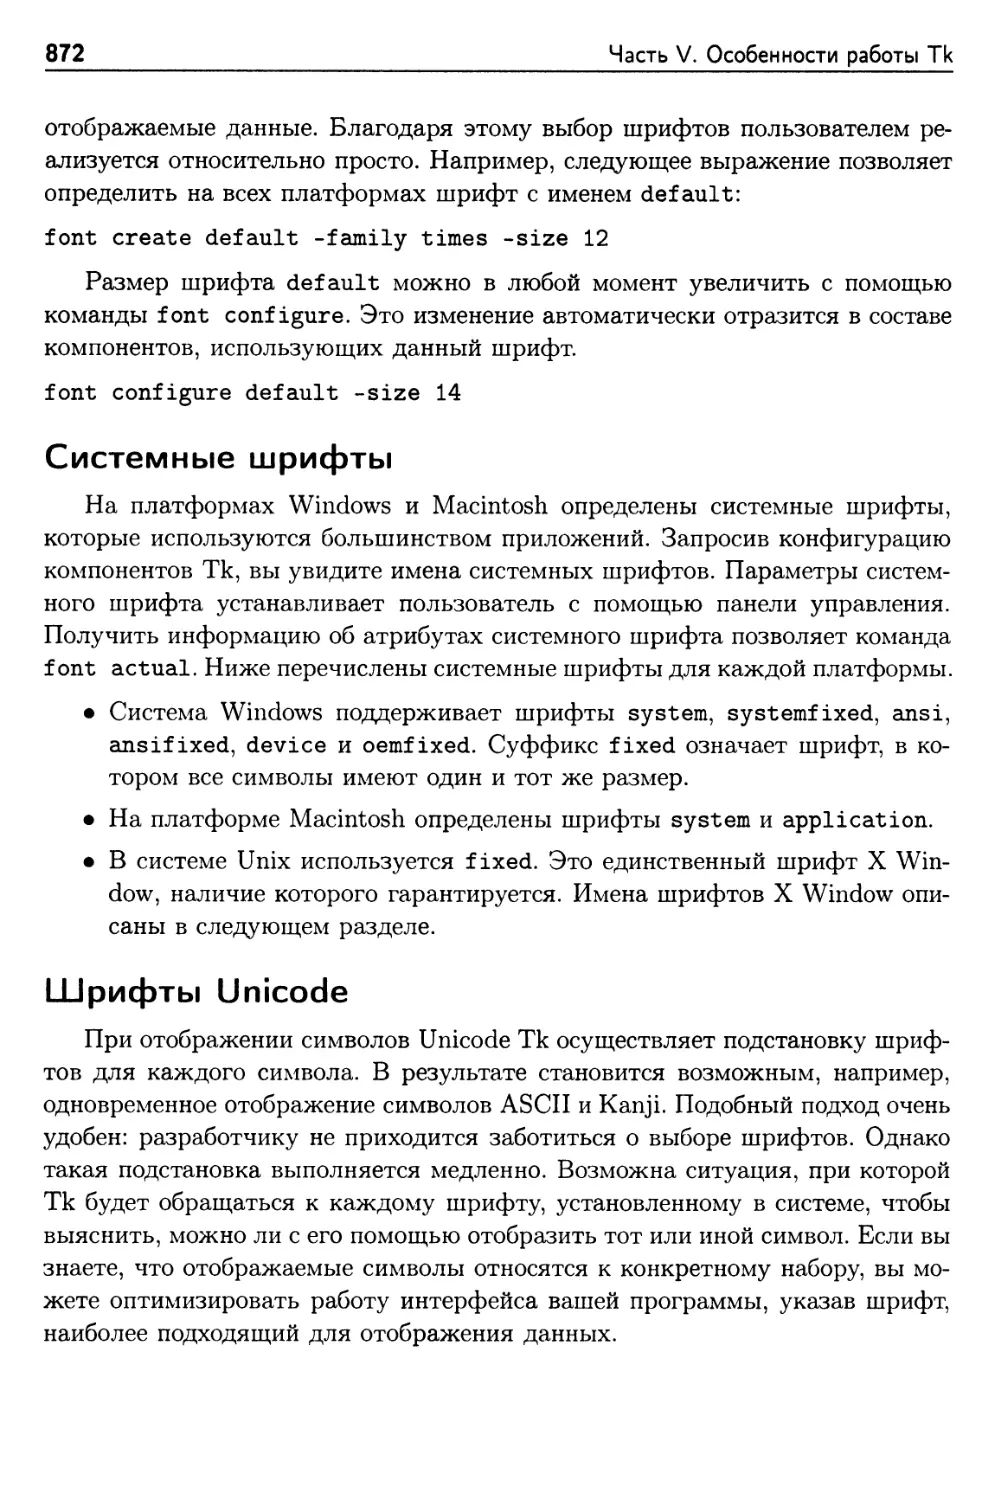 Системные шрифты
Шрифты Unicode